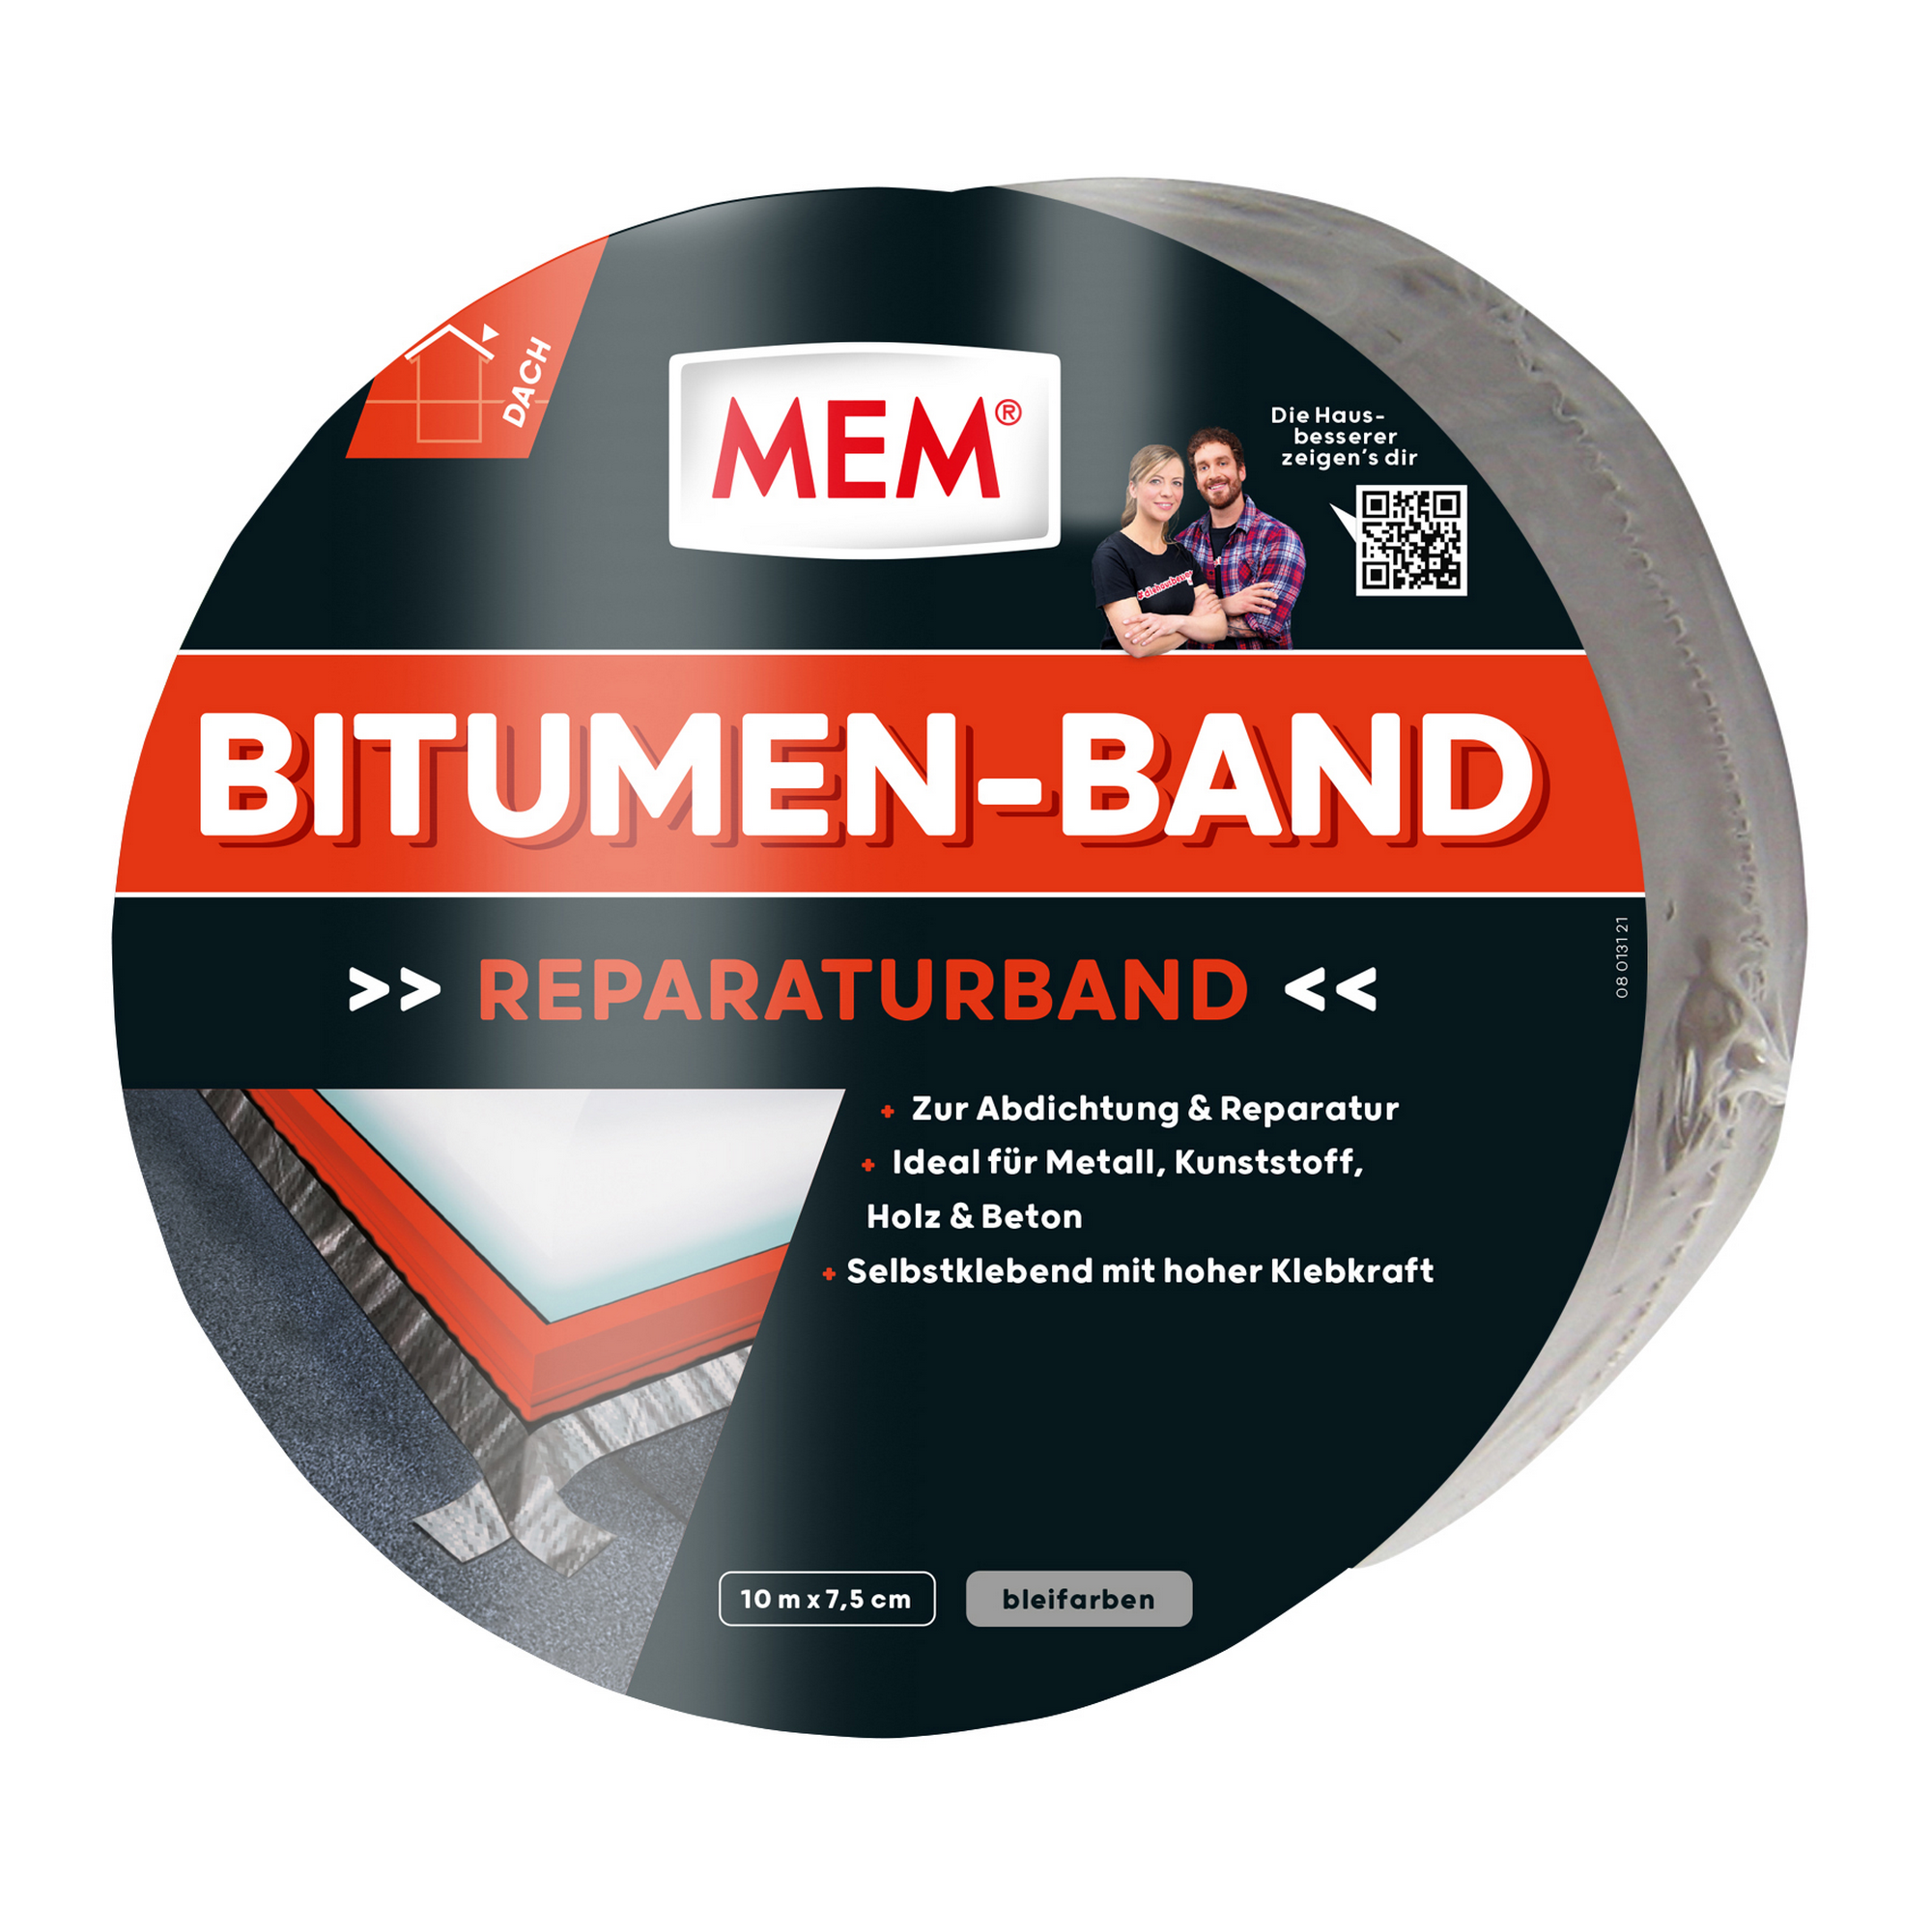 Bitumen-Band blei 7,5 cm x 10 m + product picture